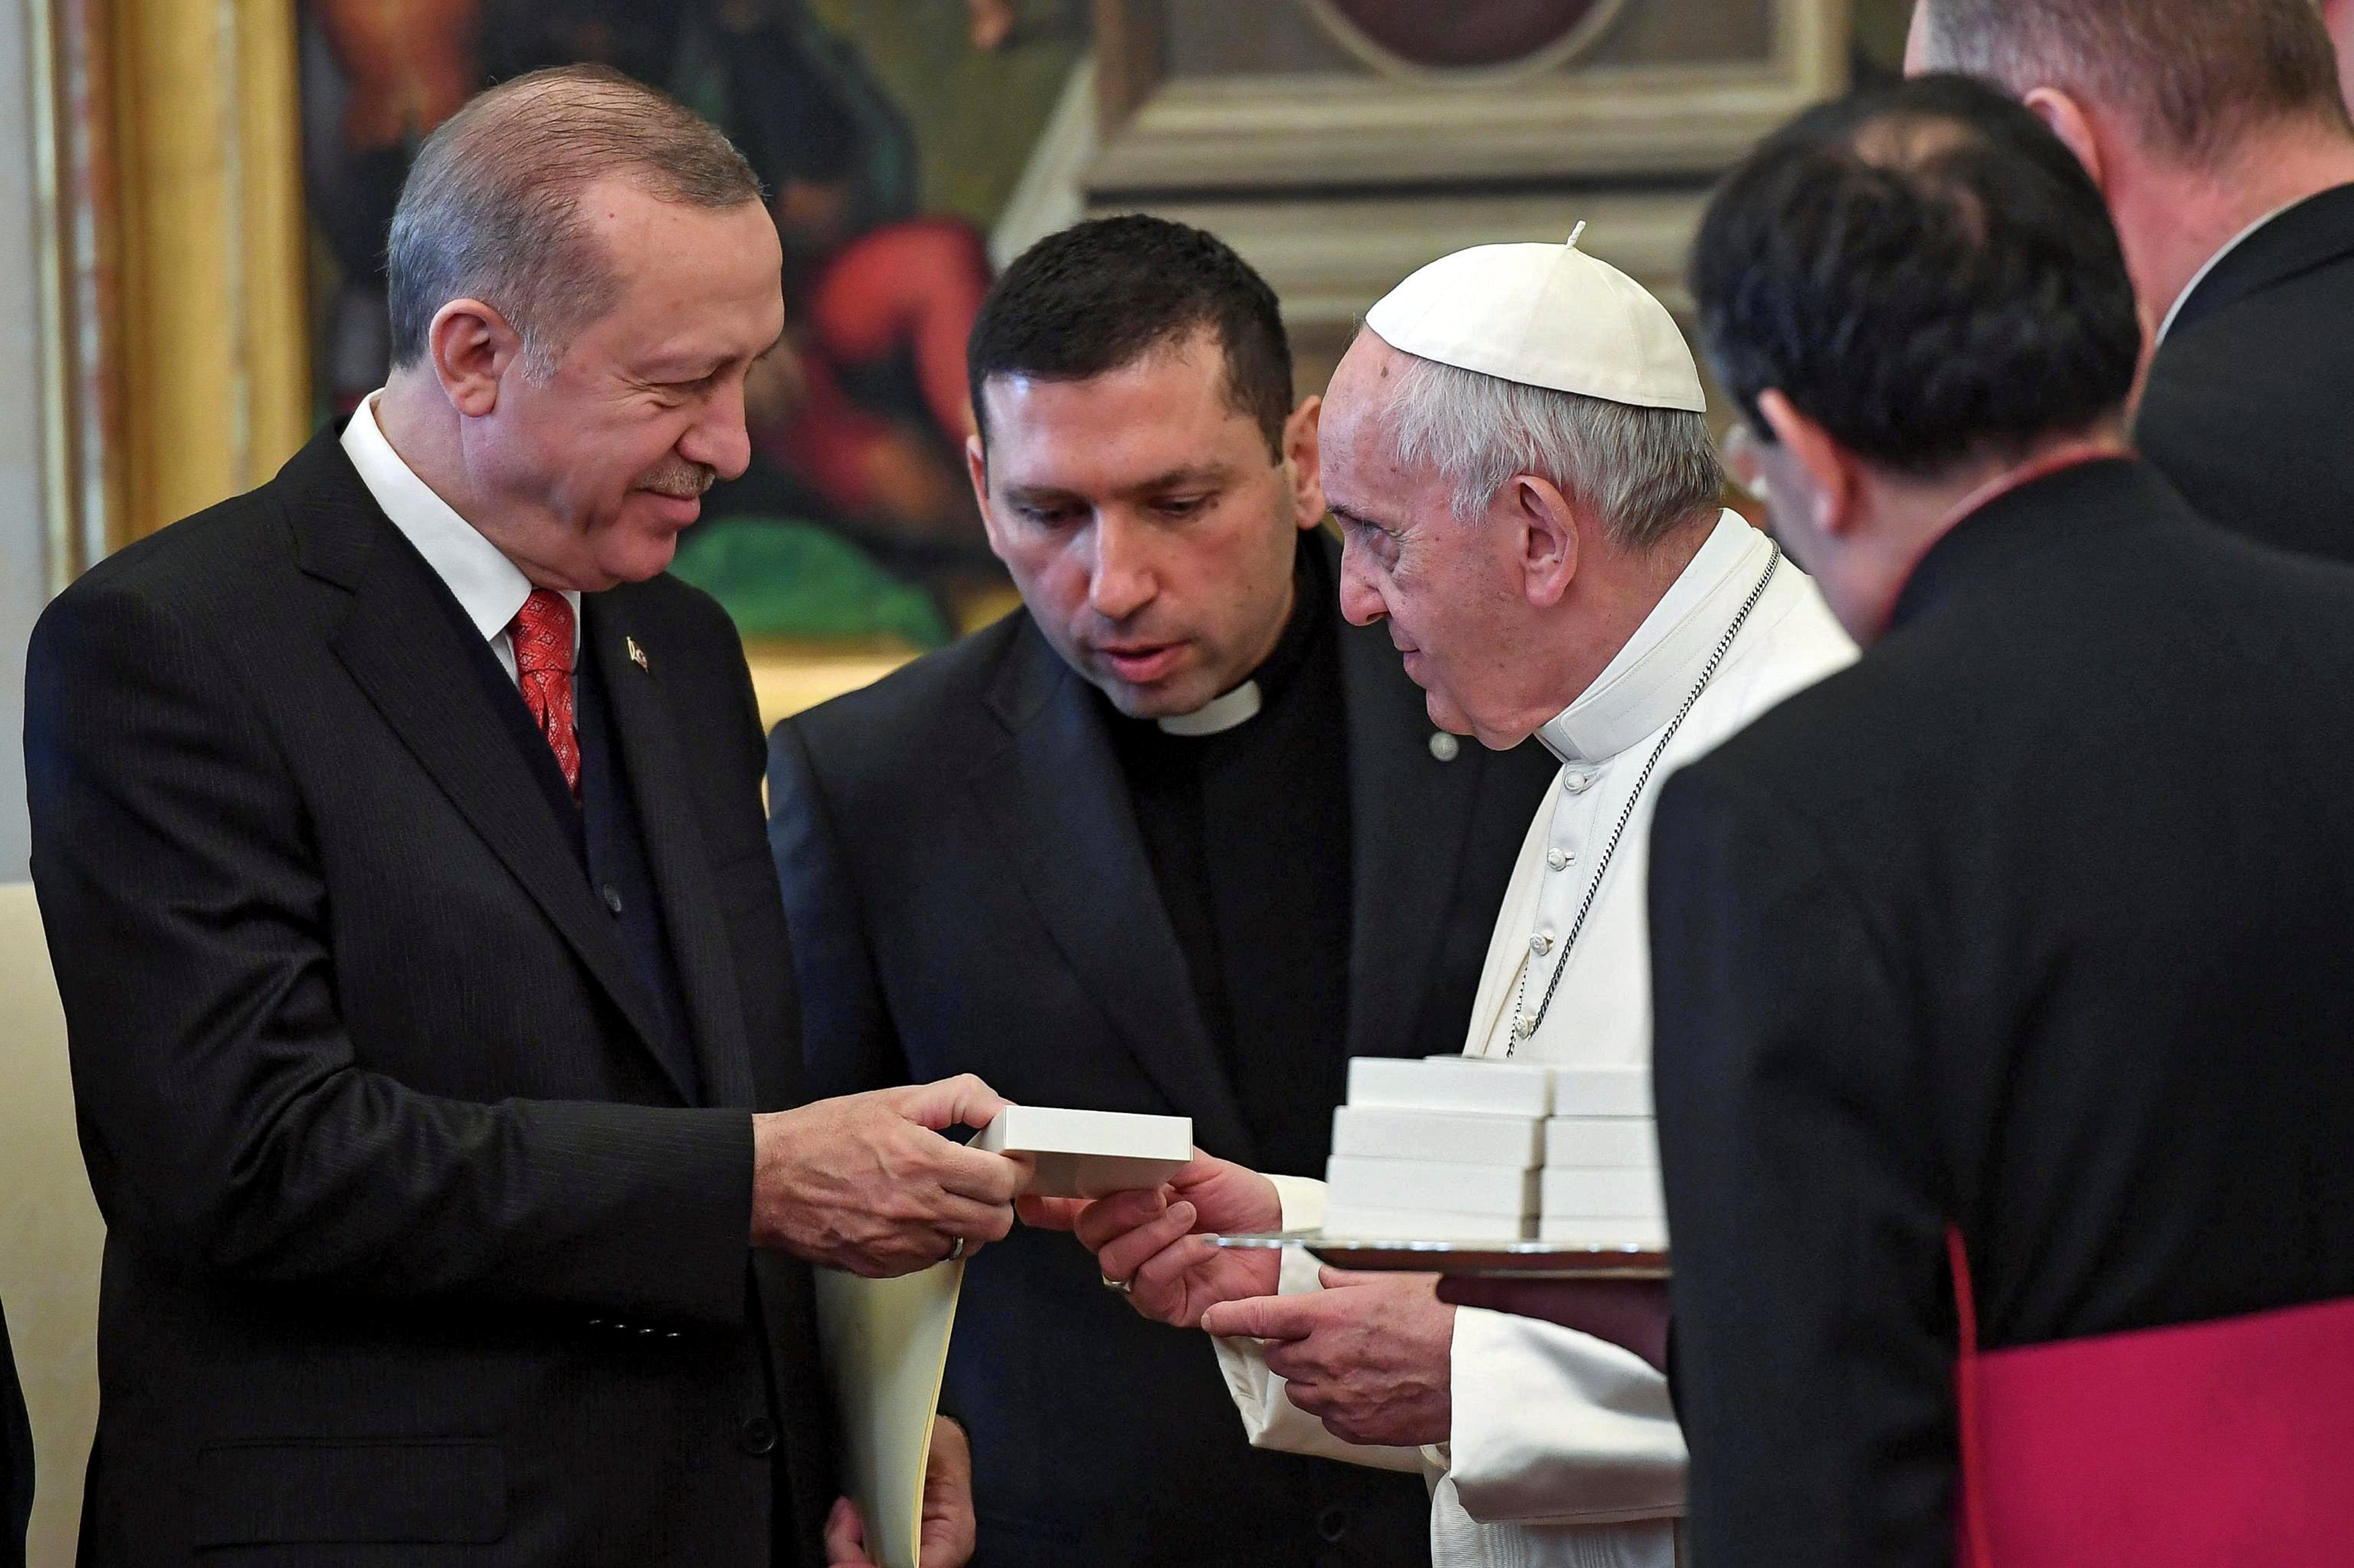 El papa Francisco obsequia un símbolo de paz al presidente turco Erdogan